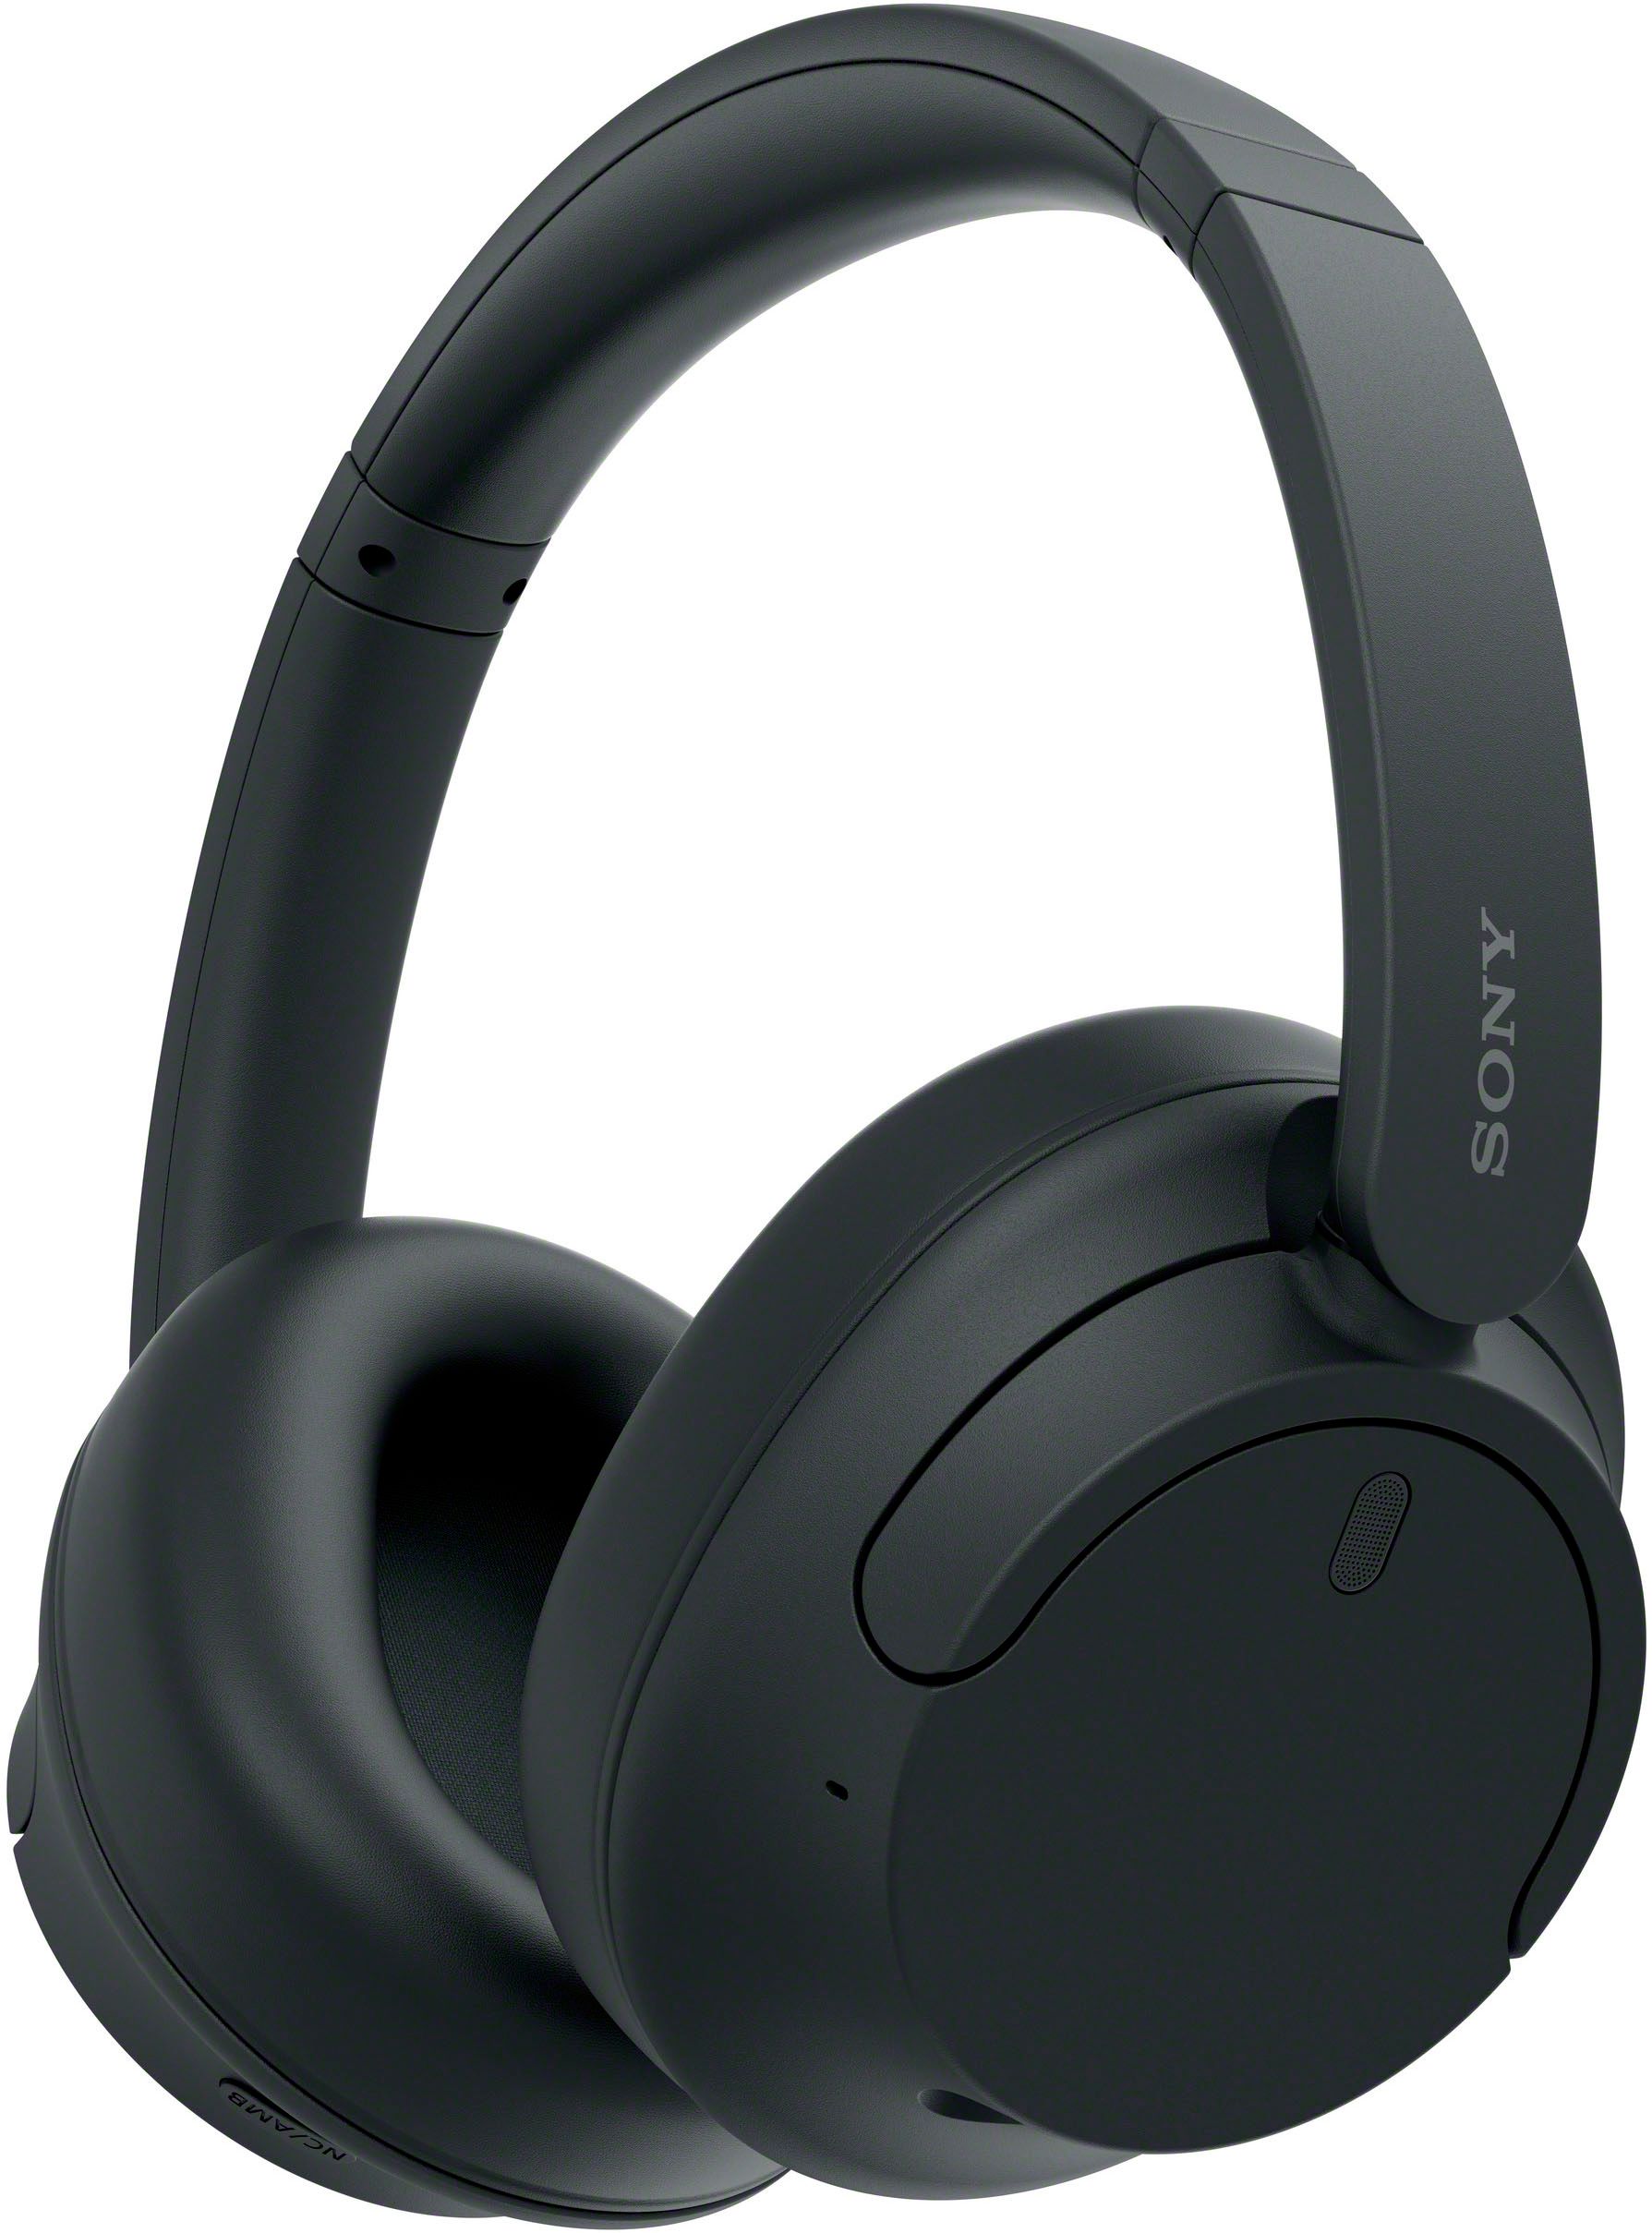 Sony WHCH720N Wireless Noise Canceling Headphones Black WHCH720N/B - Best Buy | Best Buy U.S.